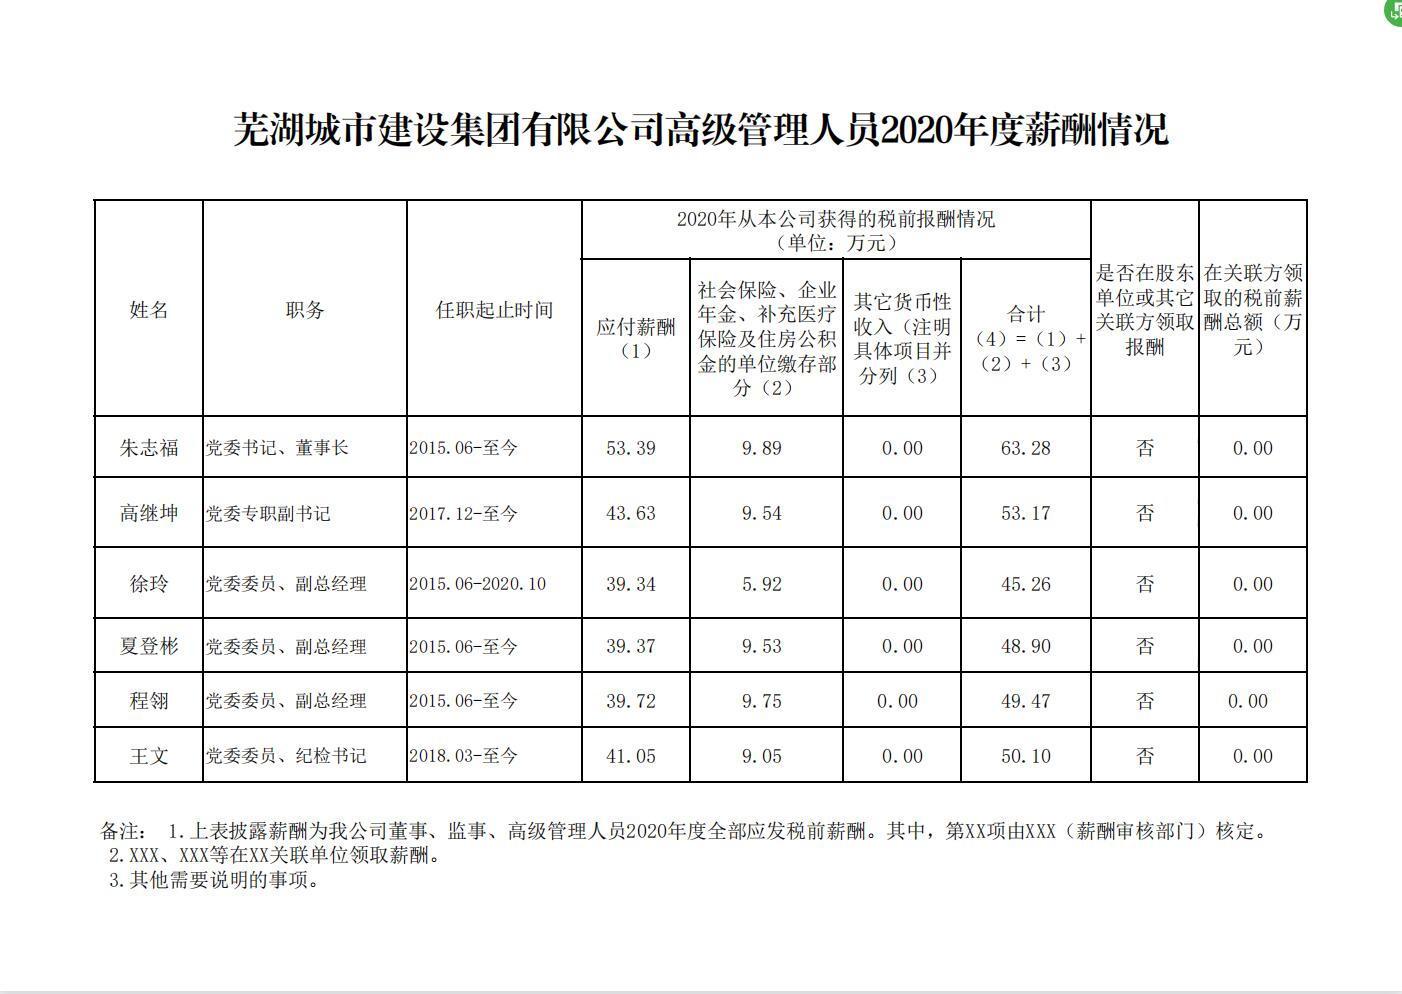 蕪湖城市建設集團有限公司高級管理人員2020年度薪酬情況